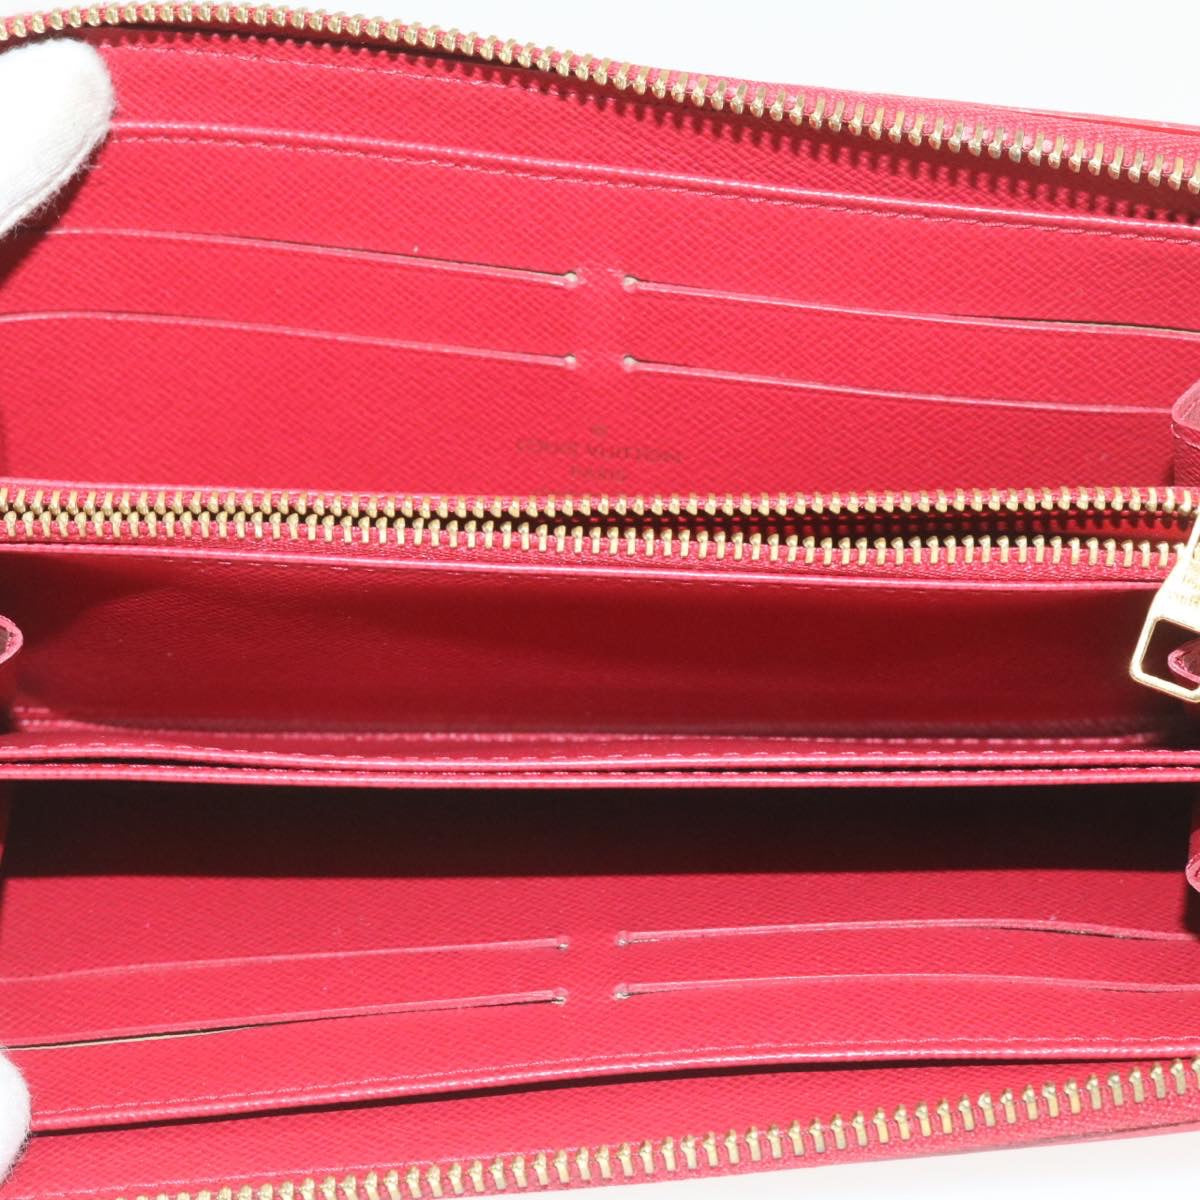 LOUIS VUITTON Panama line Zippy Wallet Long Wallet Red M58043 LV Auth hk016